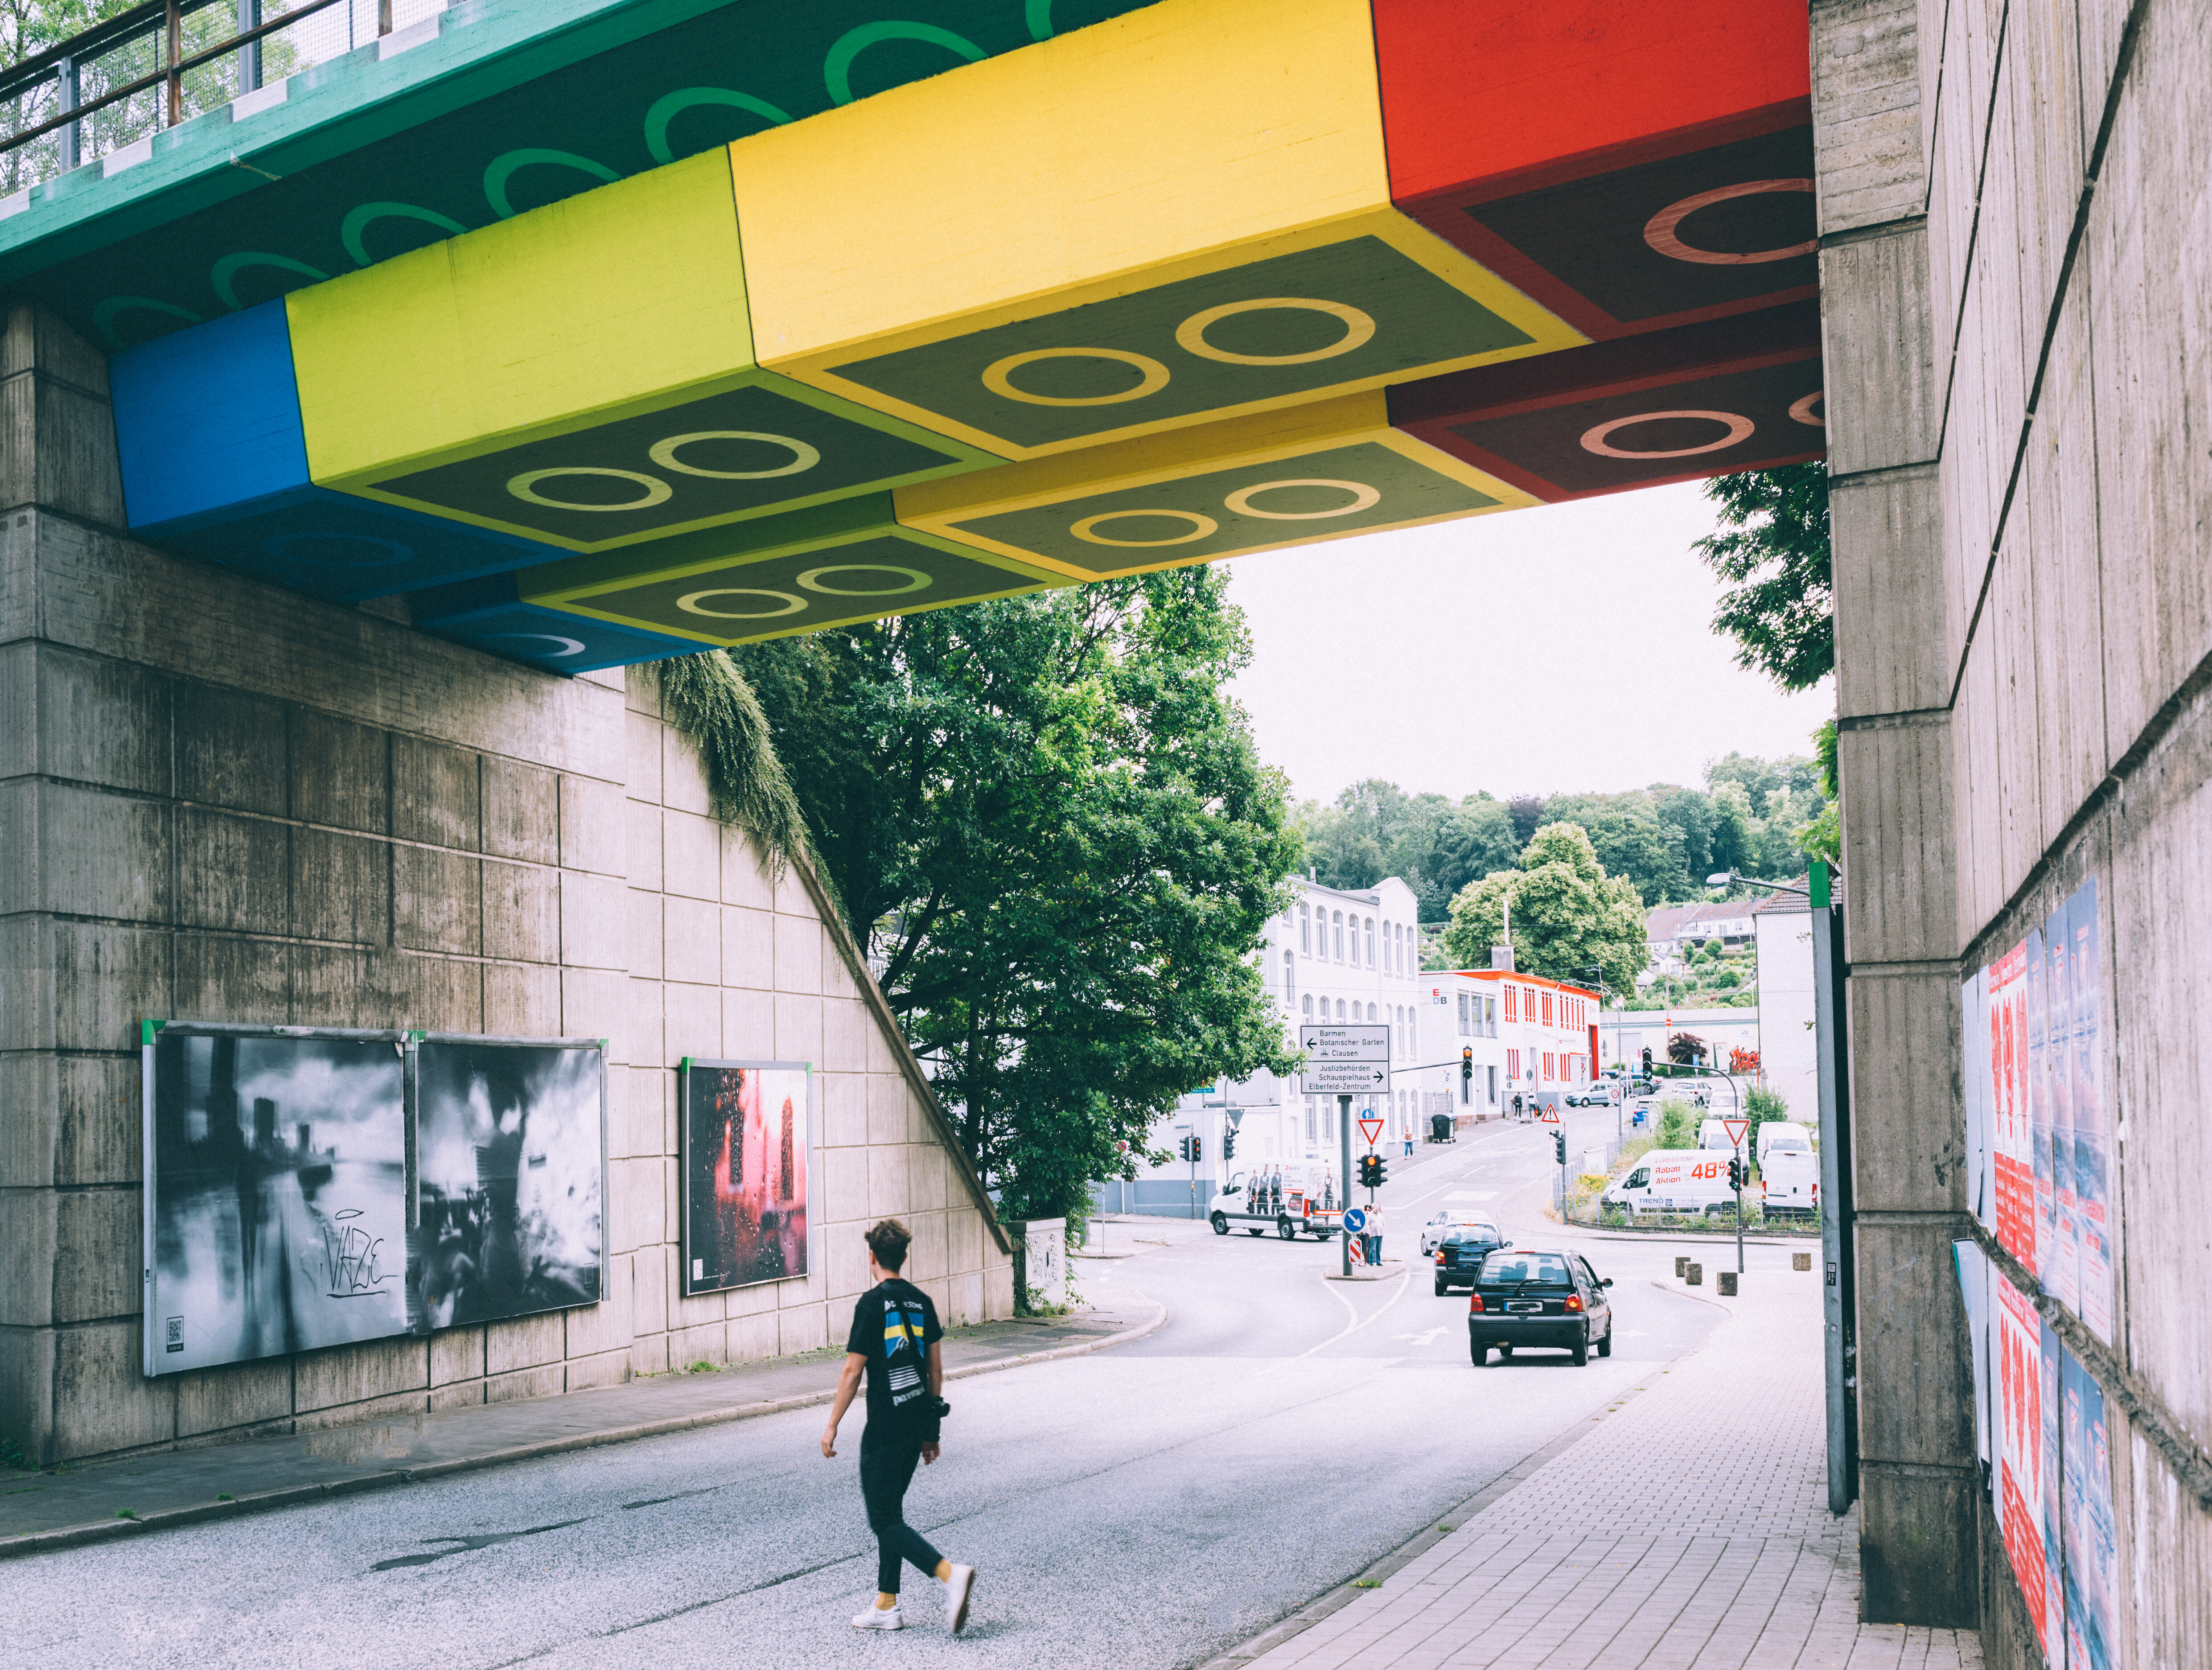 Die "Legobrücke" in Wuppertal, vom Künstler Martin Heuwold bemalt in Form von überdimensionalen Legosteinen. © Tourismus NRW e.V./Johannes Höhn